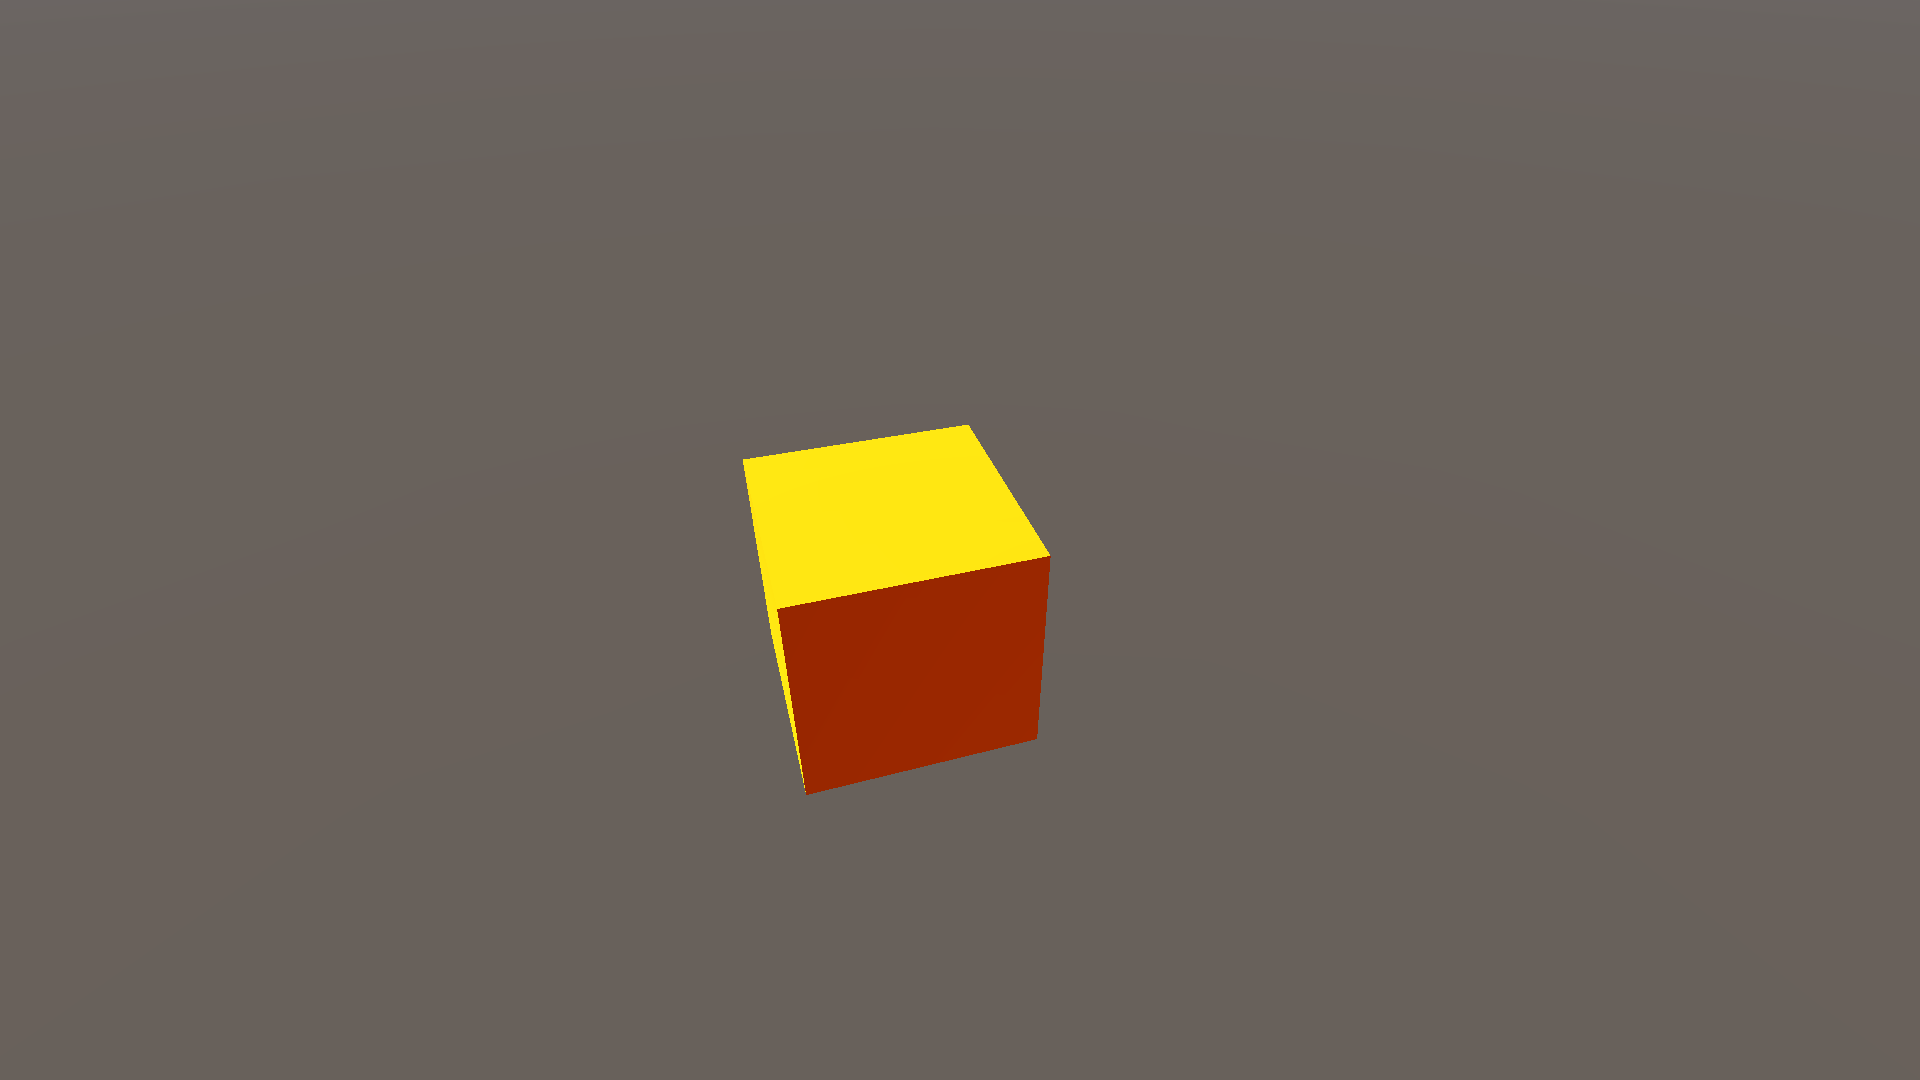 Sean's Mod the Cube